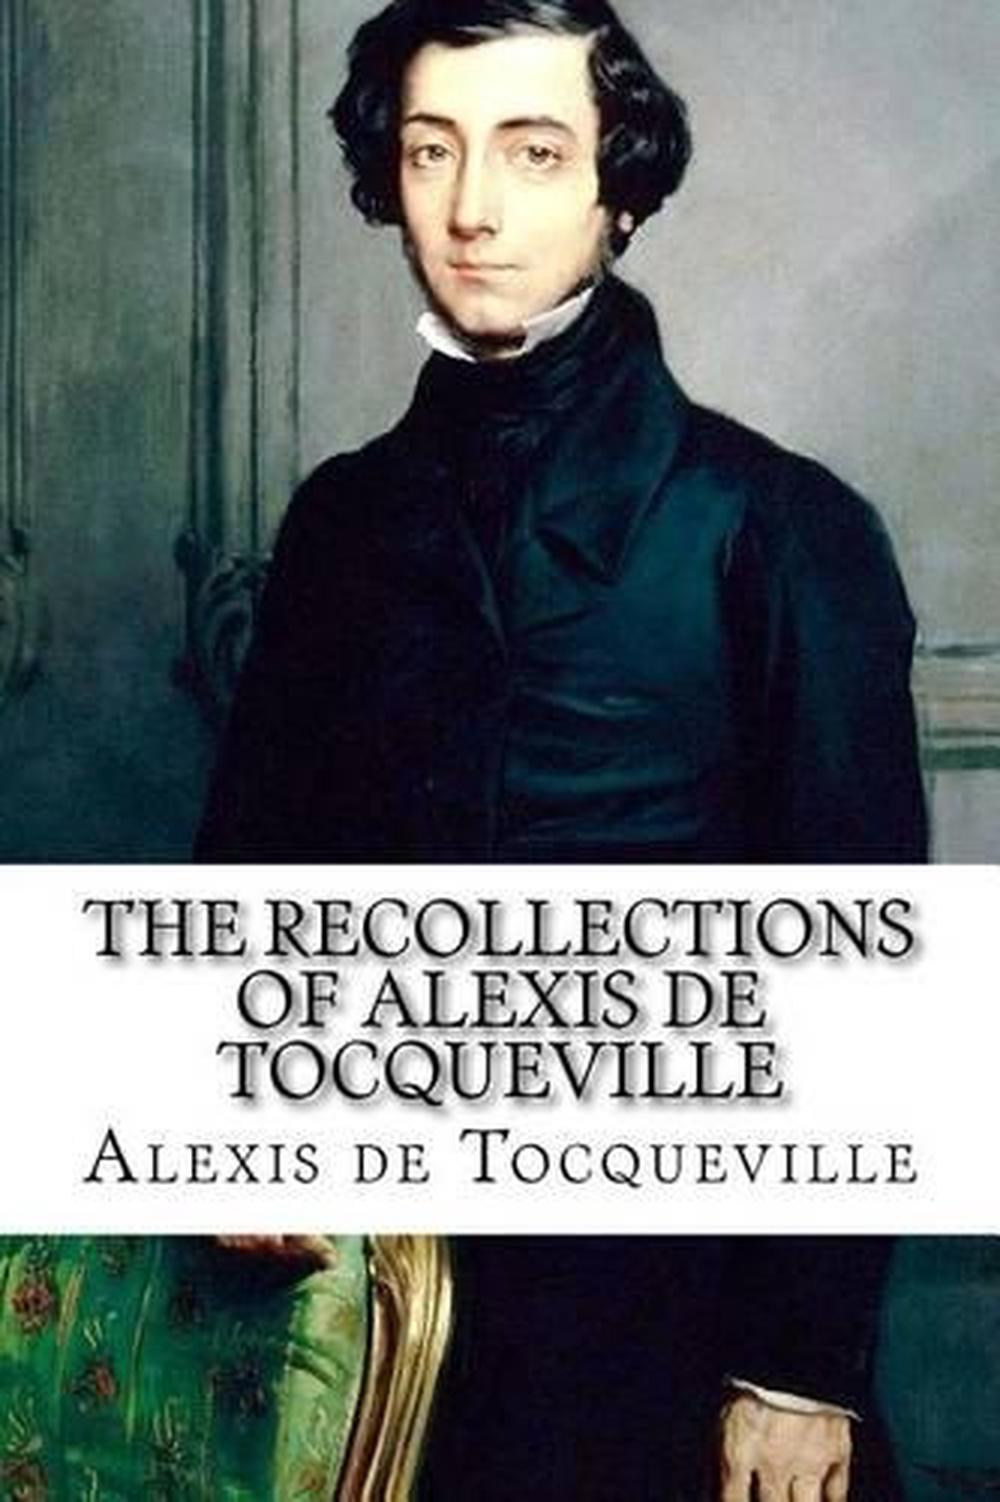 Memoir on Pauperism by Alexis de Tocqueville